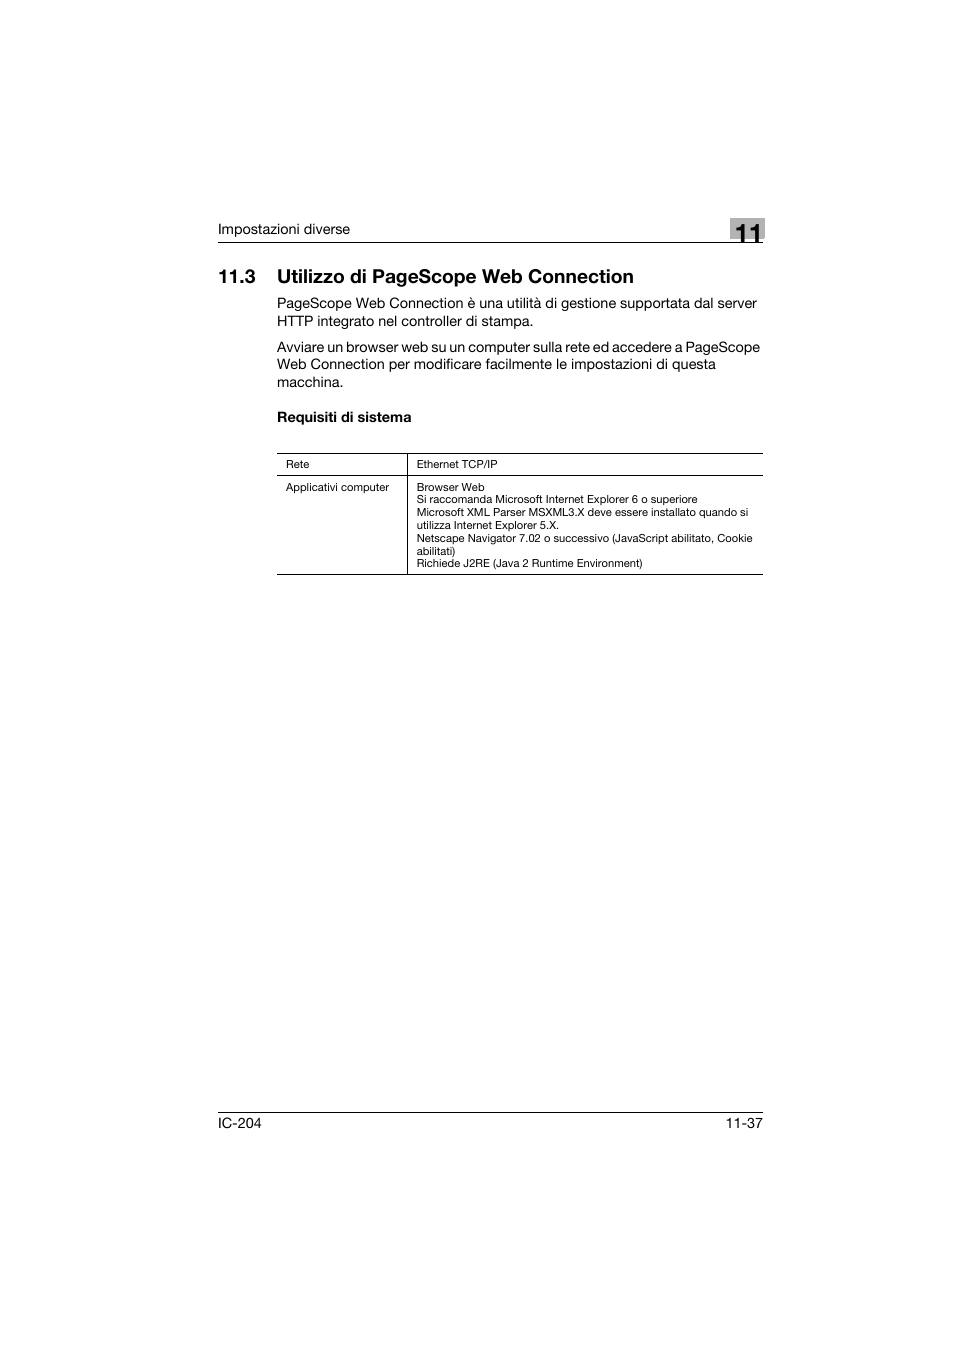 Requisiti di sistema, Requisiti di sistema -37, 3 utilizzo di pagescope web connection | Konica Minolta IC-204 Manuale d'uso | Pagina 353 / 430